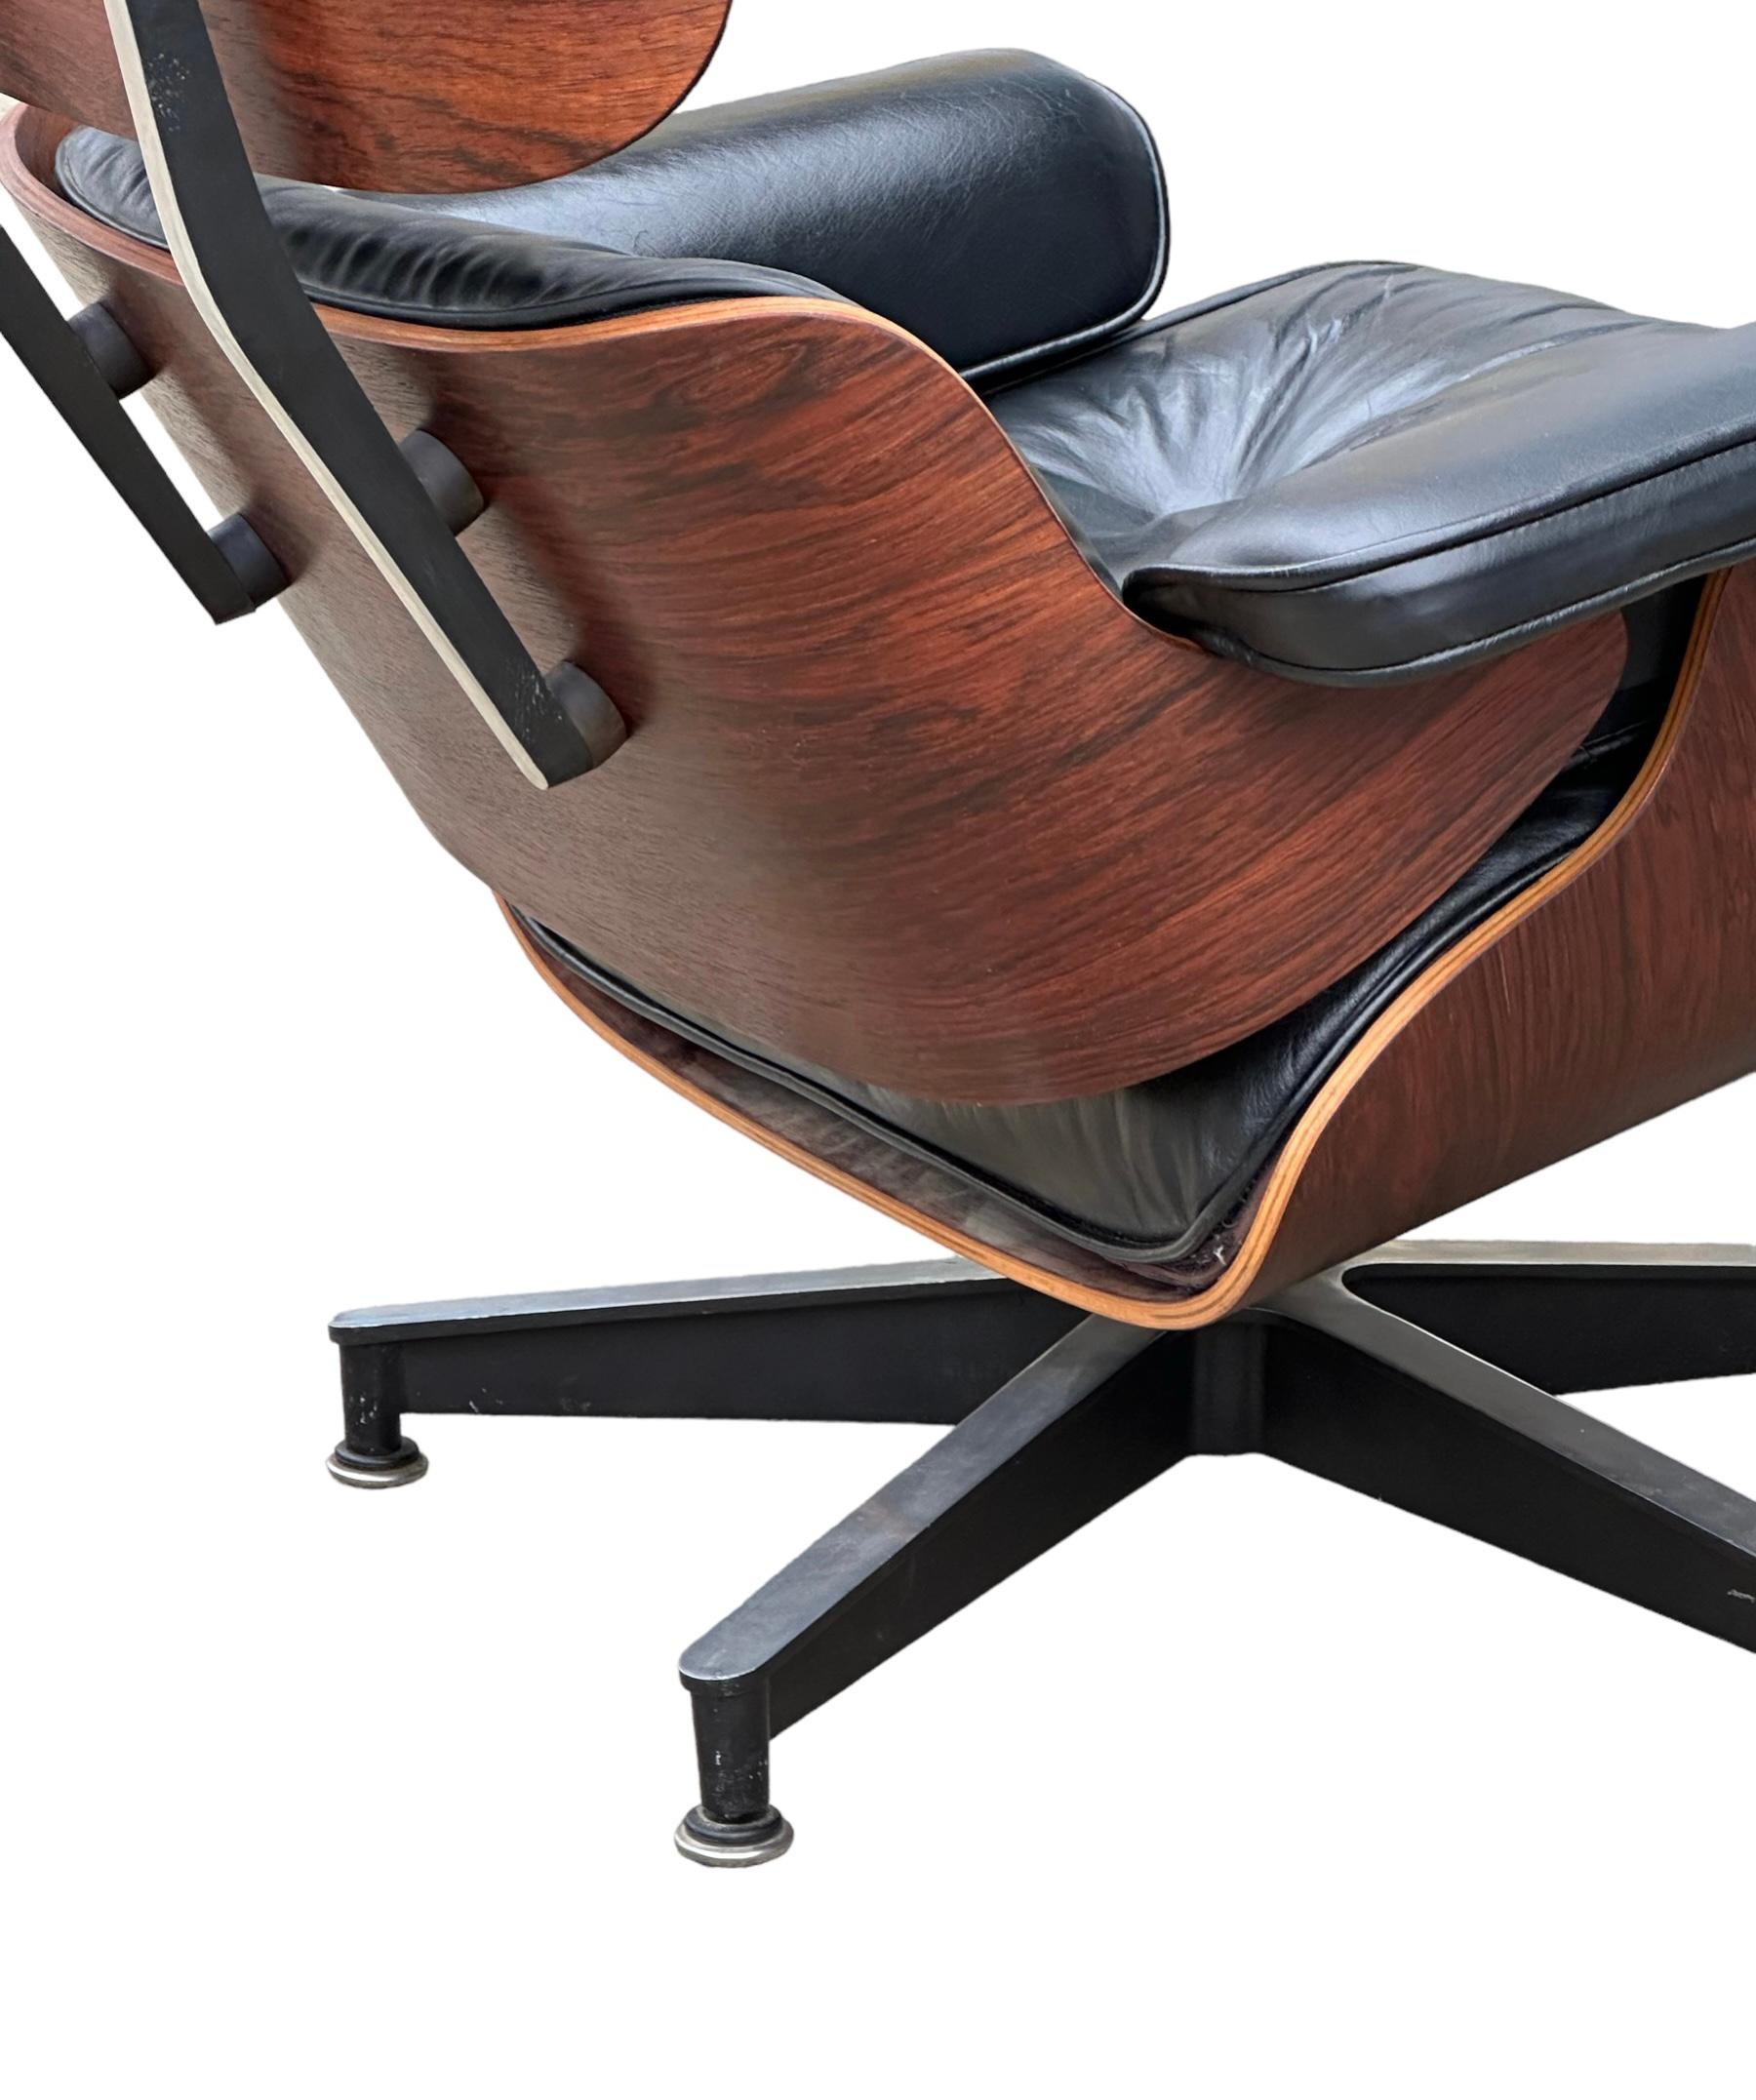 Cuir Chaise longue et ottoman Eames de Herman Miller restaurés